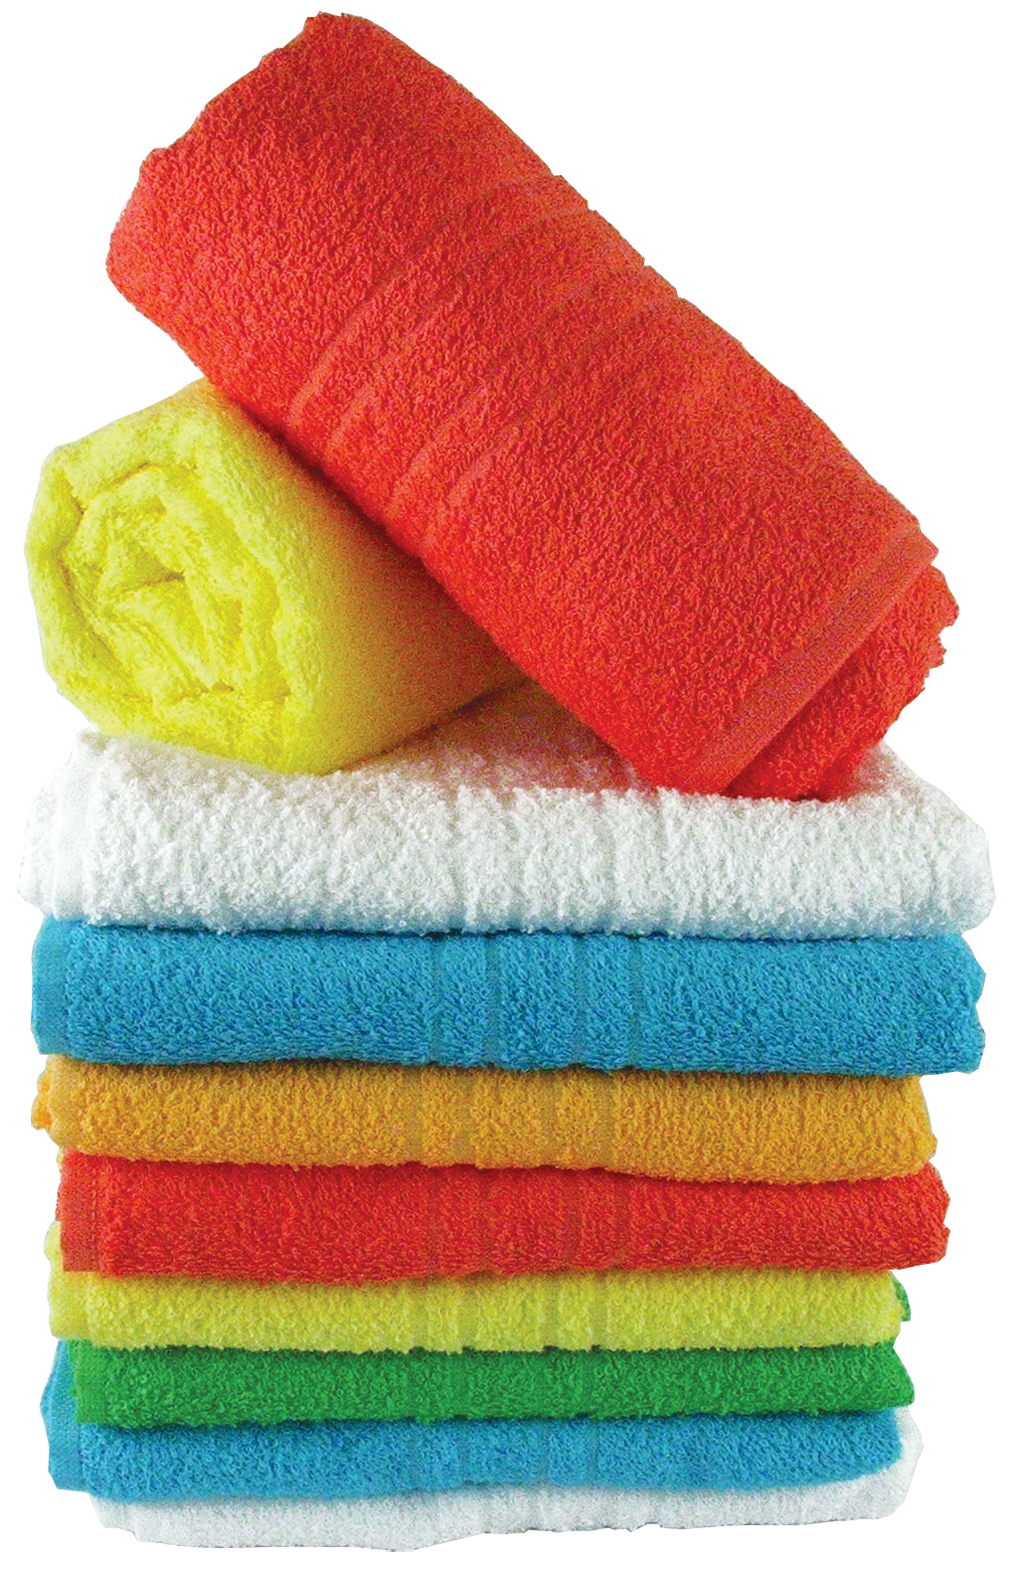 Микробиолог: Хавлиените кърпи да се перат след 3 ползвания